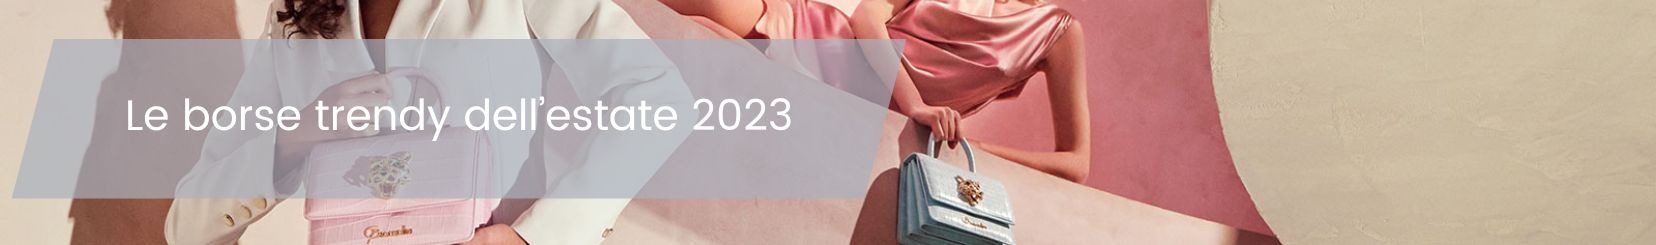 Le borse trendy dell’estate 2023